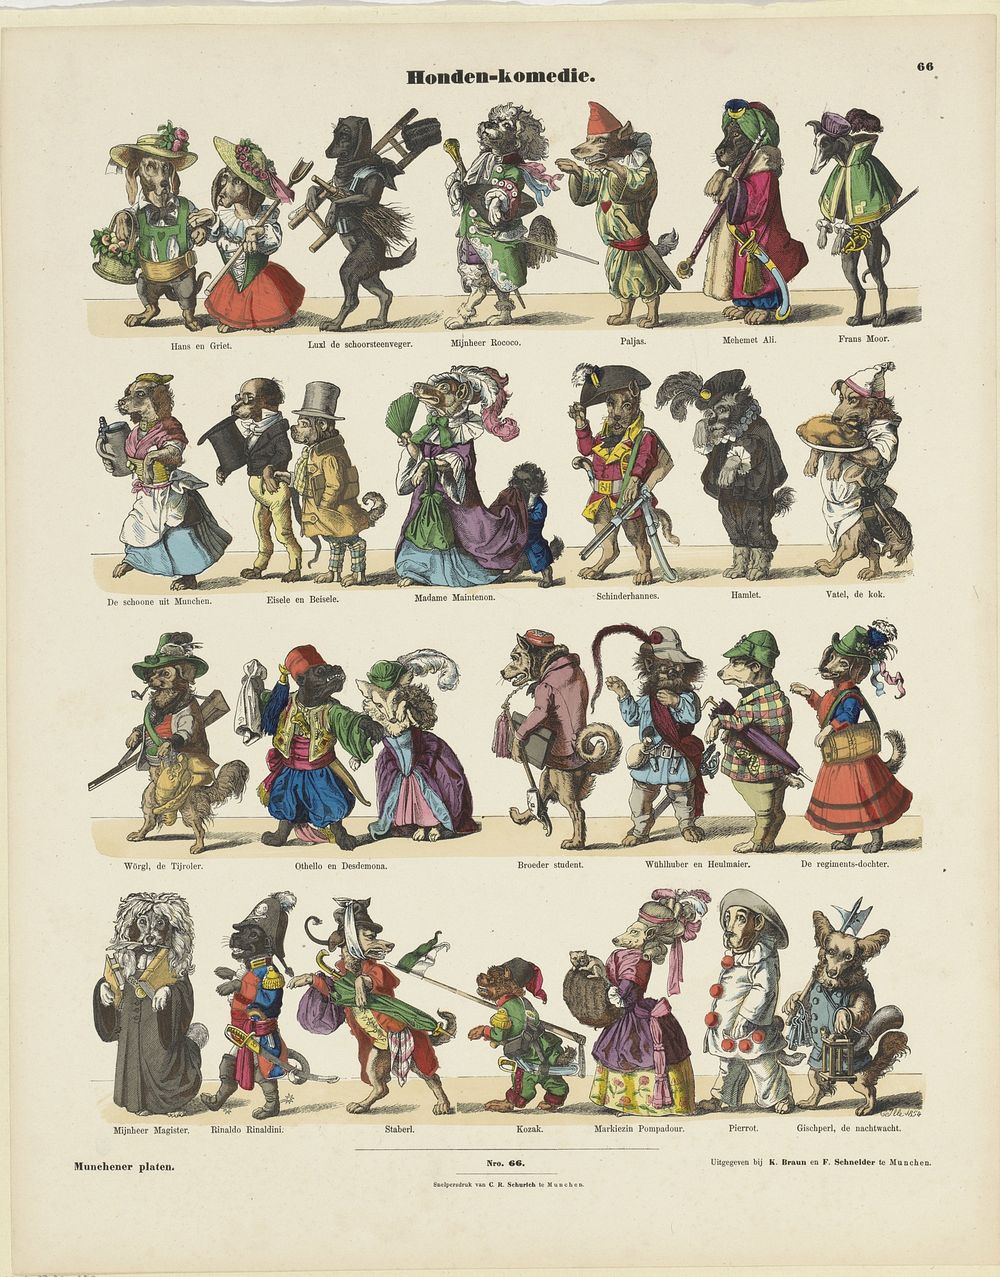 Honden-komedie (1854) by E Ille, K Braun en Fr Schneider and Carl Robert Schurich